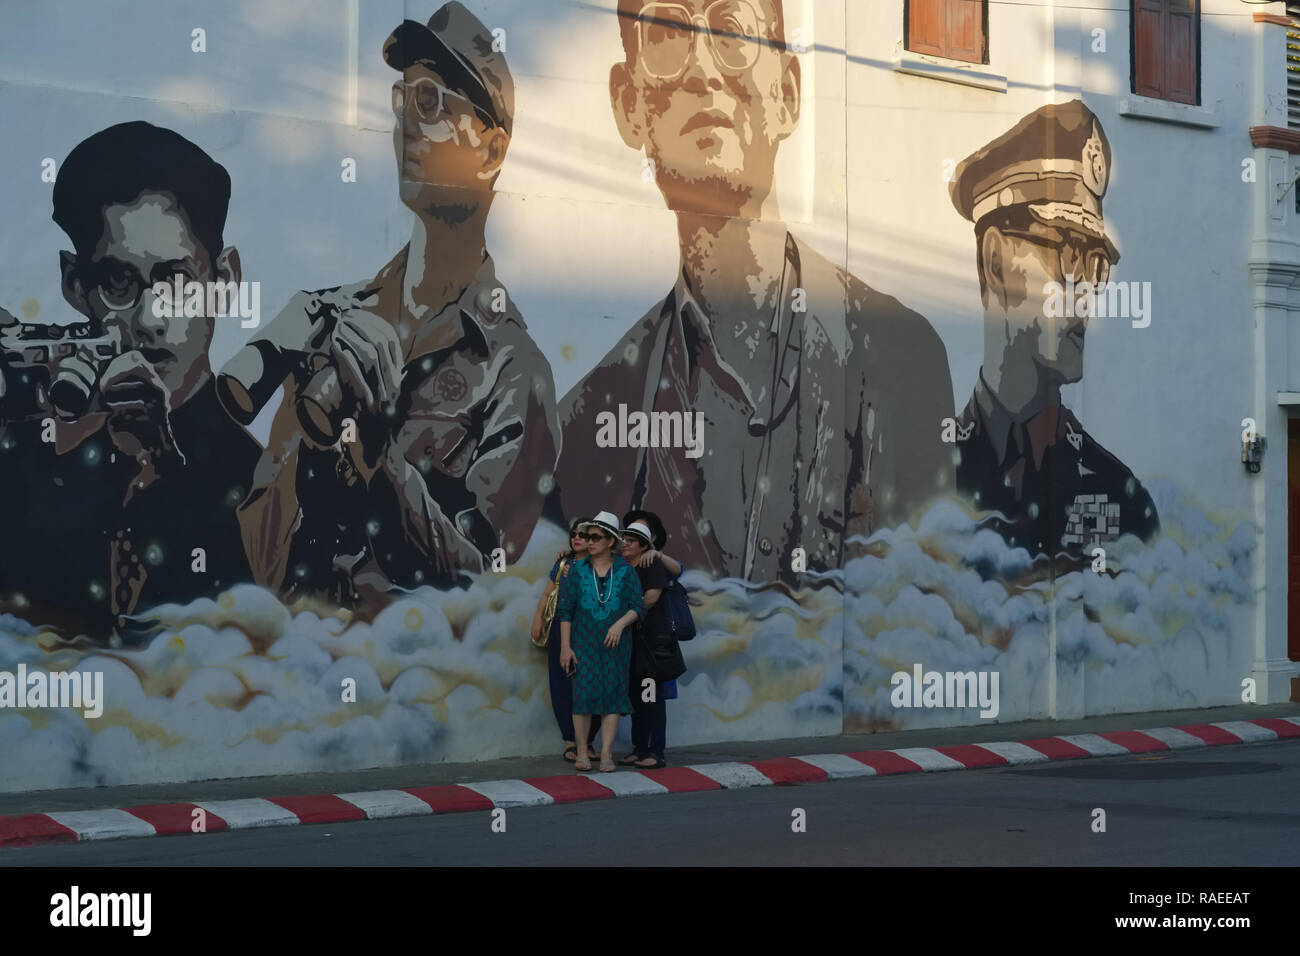 Les touristes dans la ville de Phuket, Thaïlande, posent le cadre d'une peinture murale représentant l'ancien Roi Bhumipol Adulyadej dans différentes phases de sa vie Banque D'Images